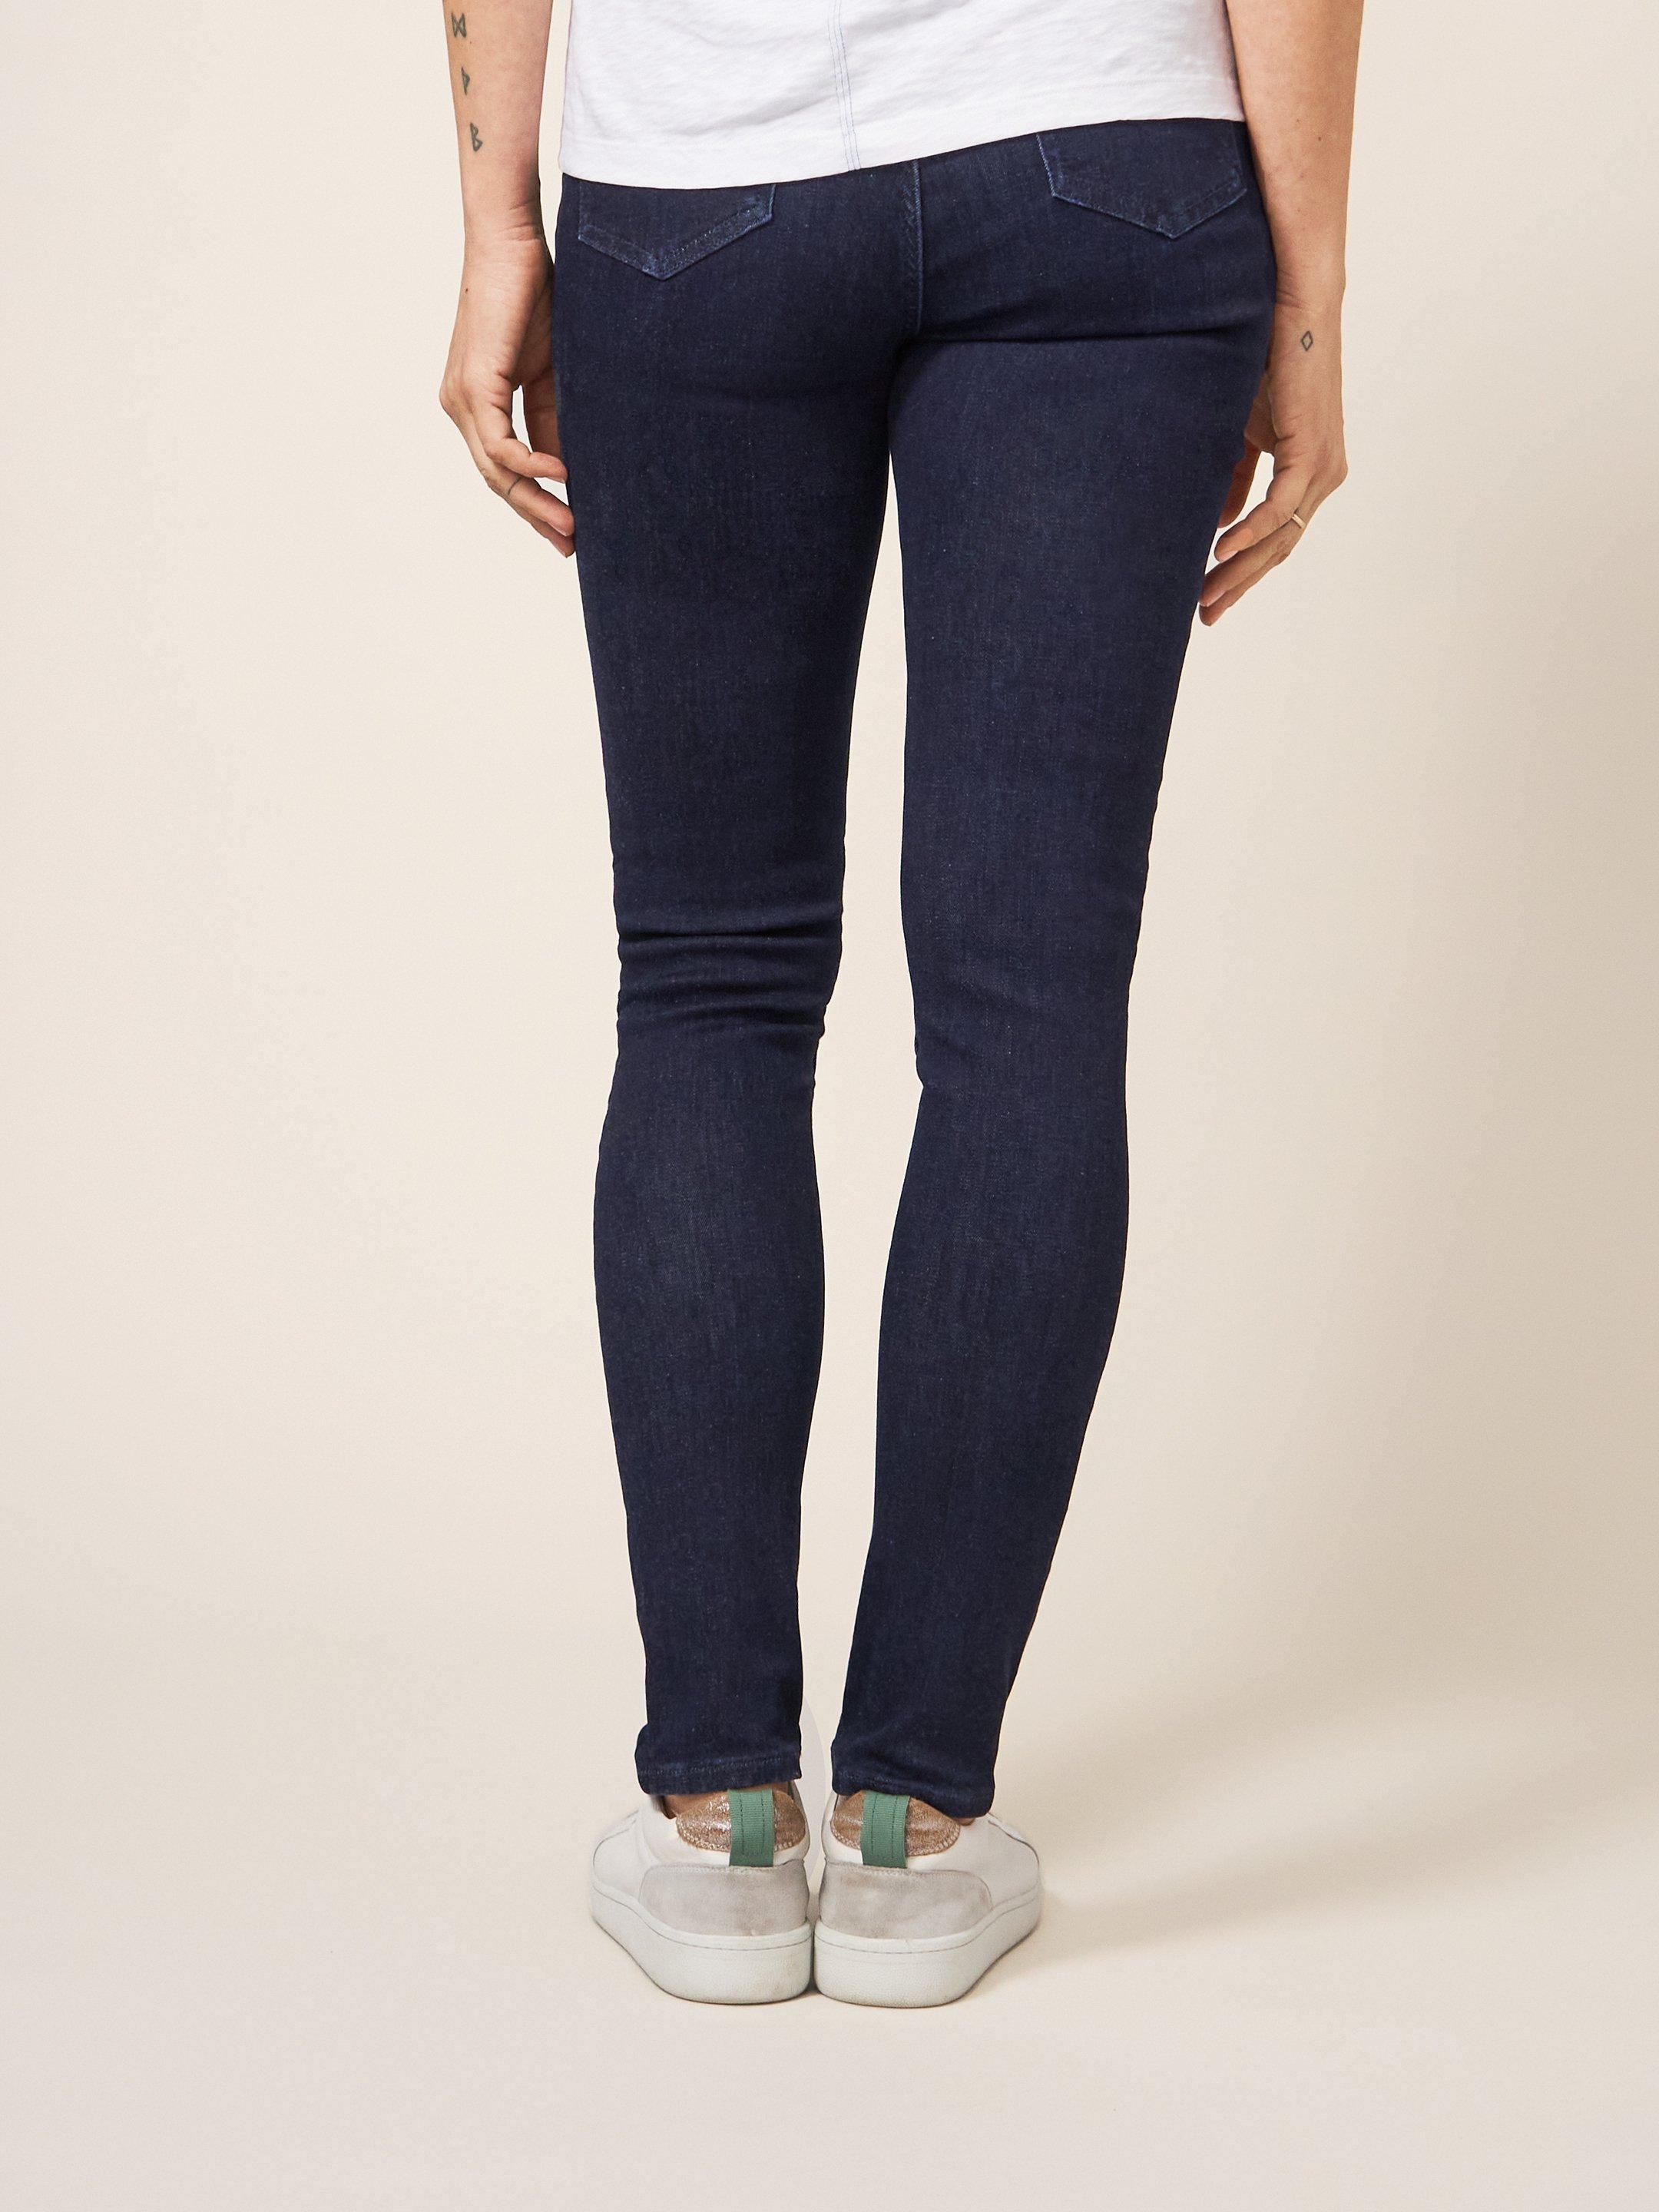 Amelia Skinny Jeans in DK DENIM - MODEL BACK